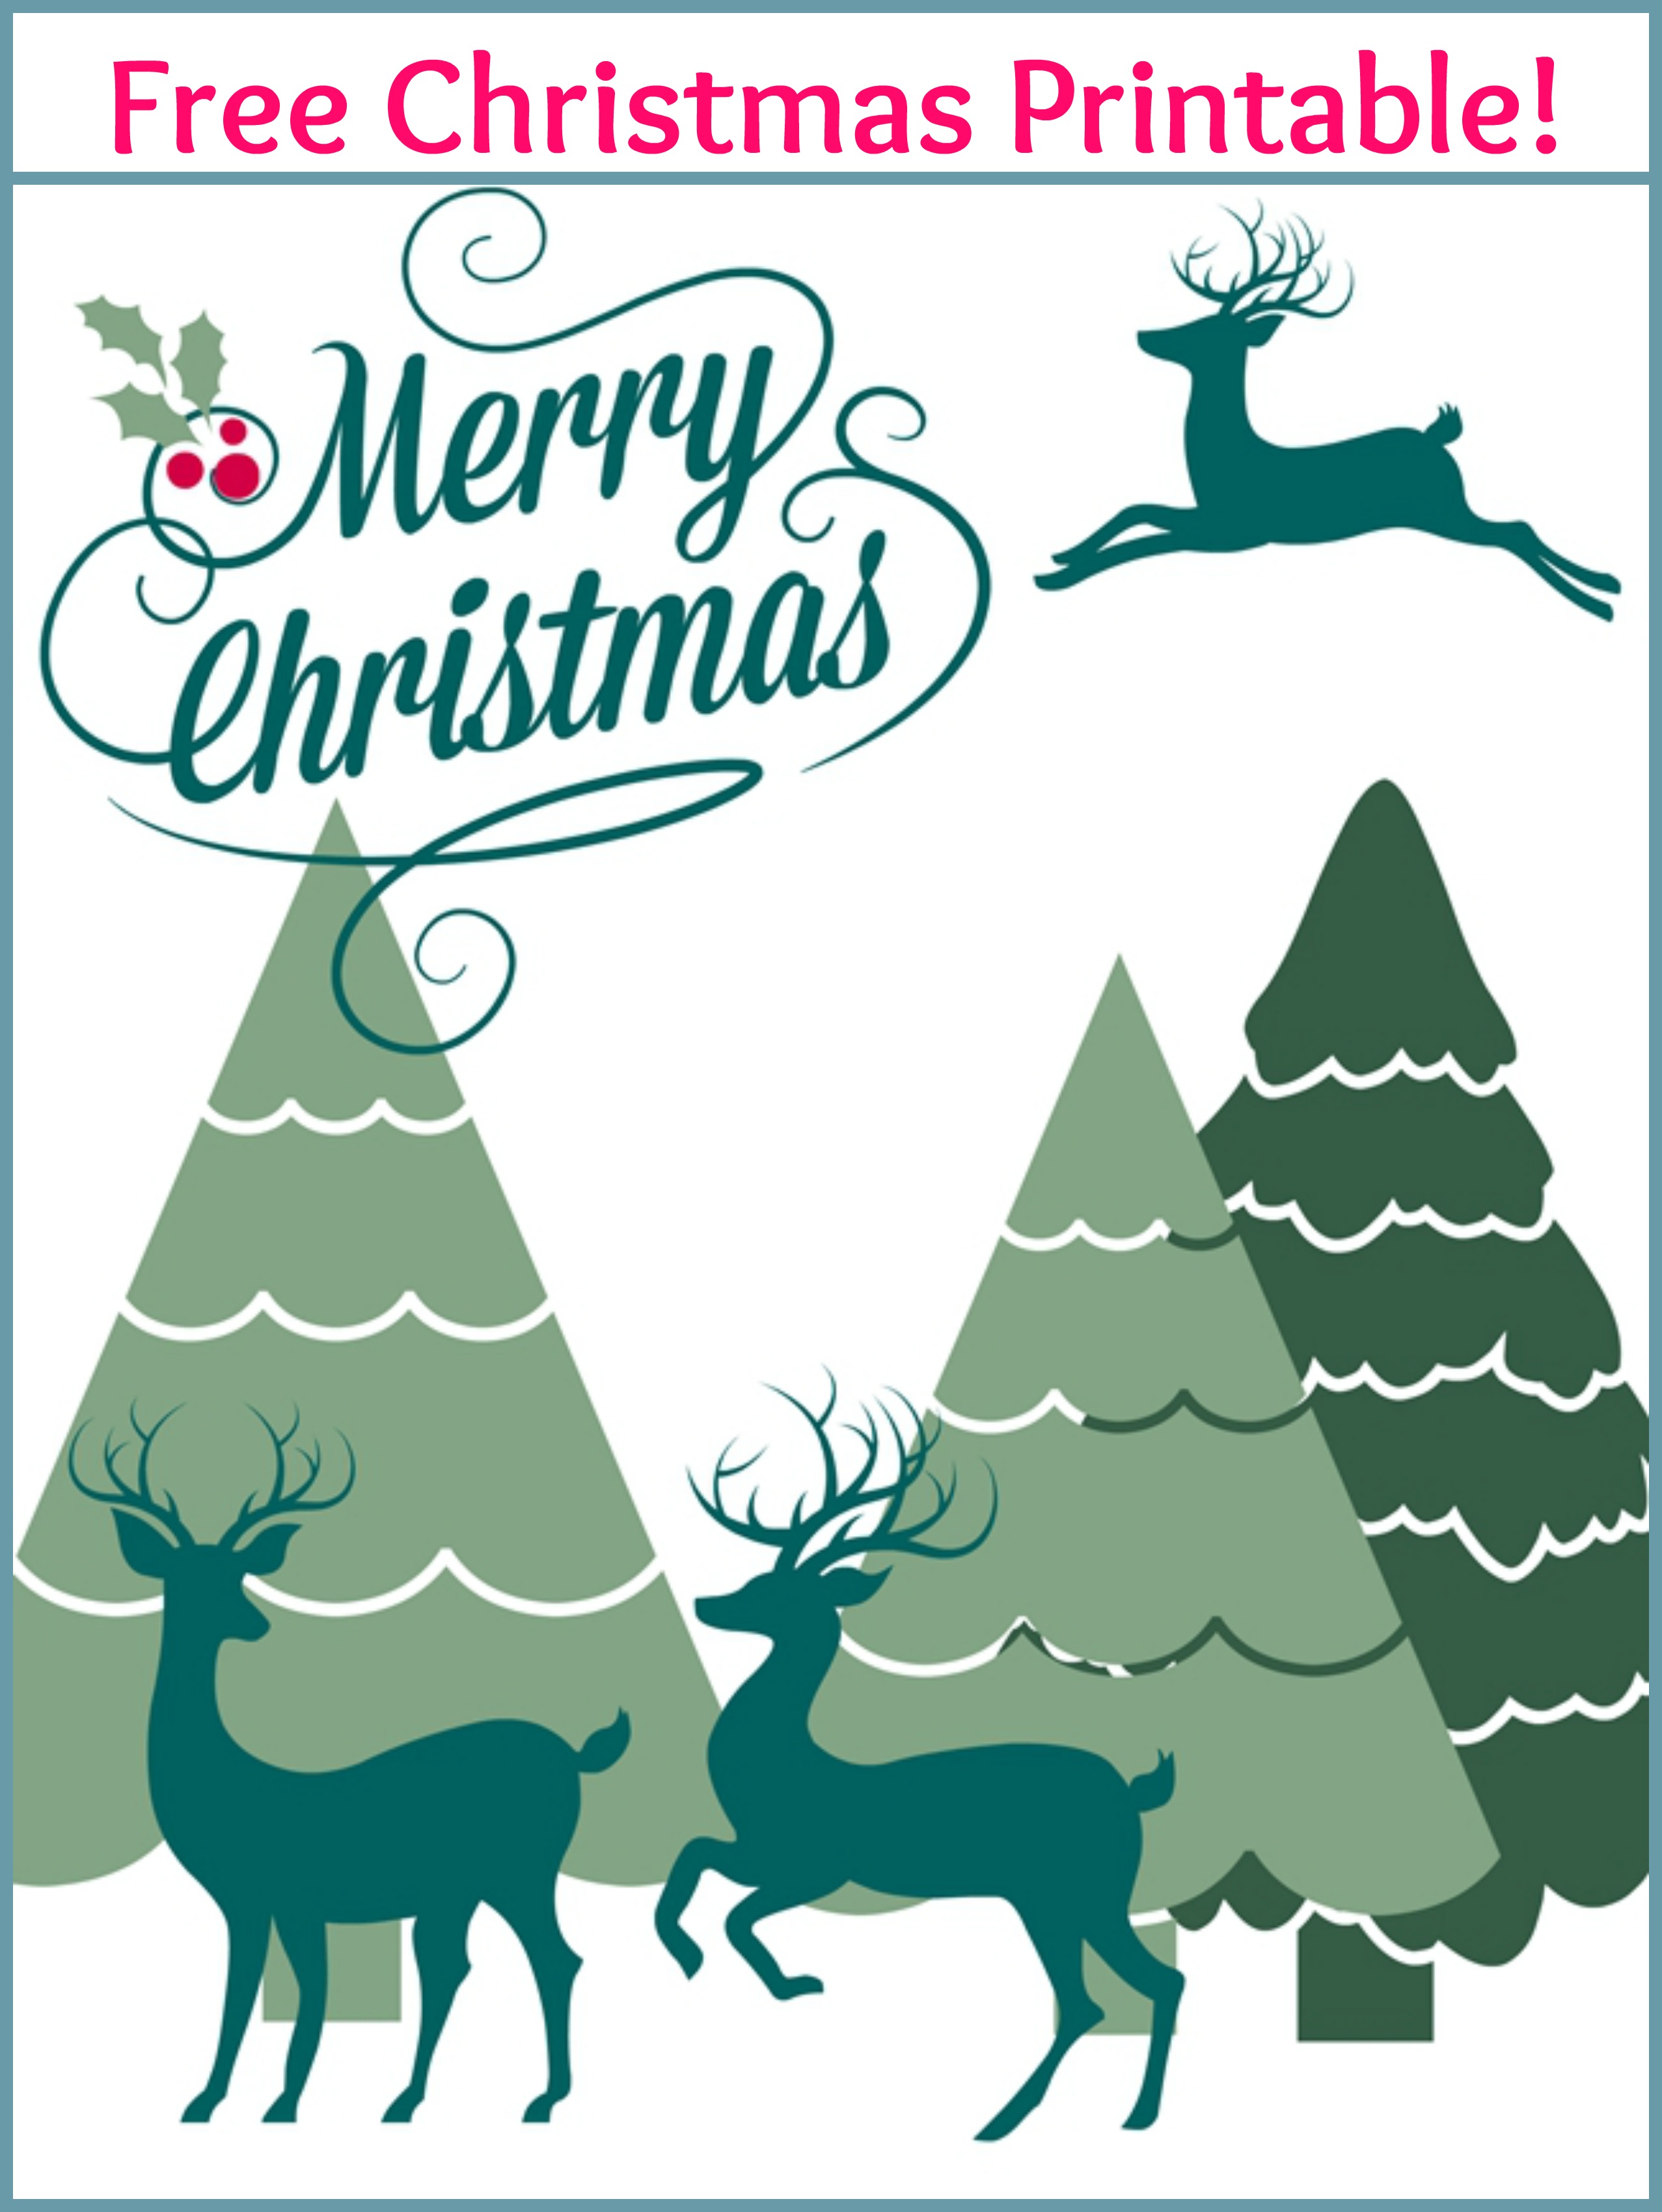 Merry Christmas Card Free Printable Printable Templates